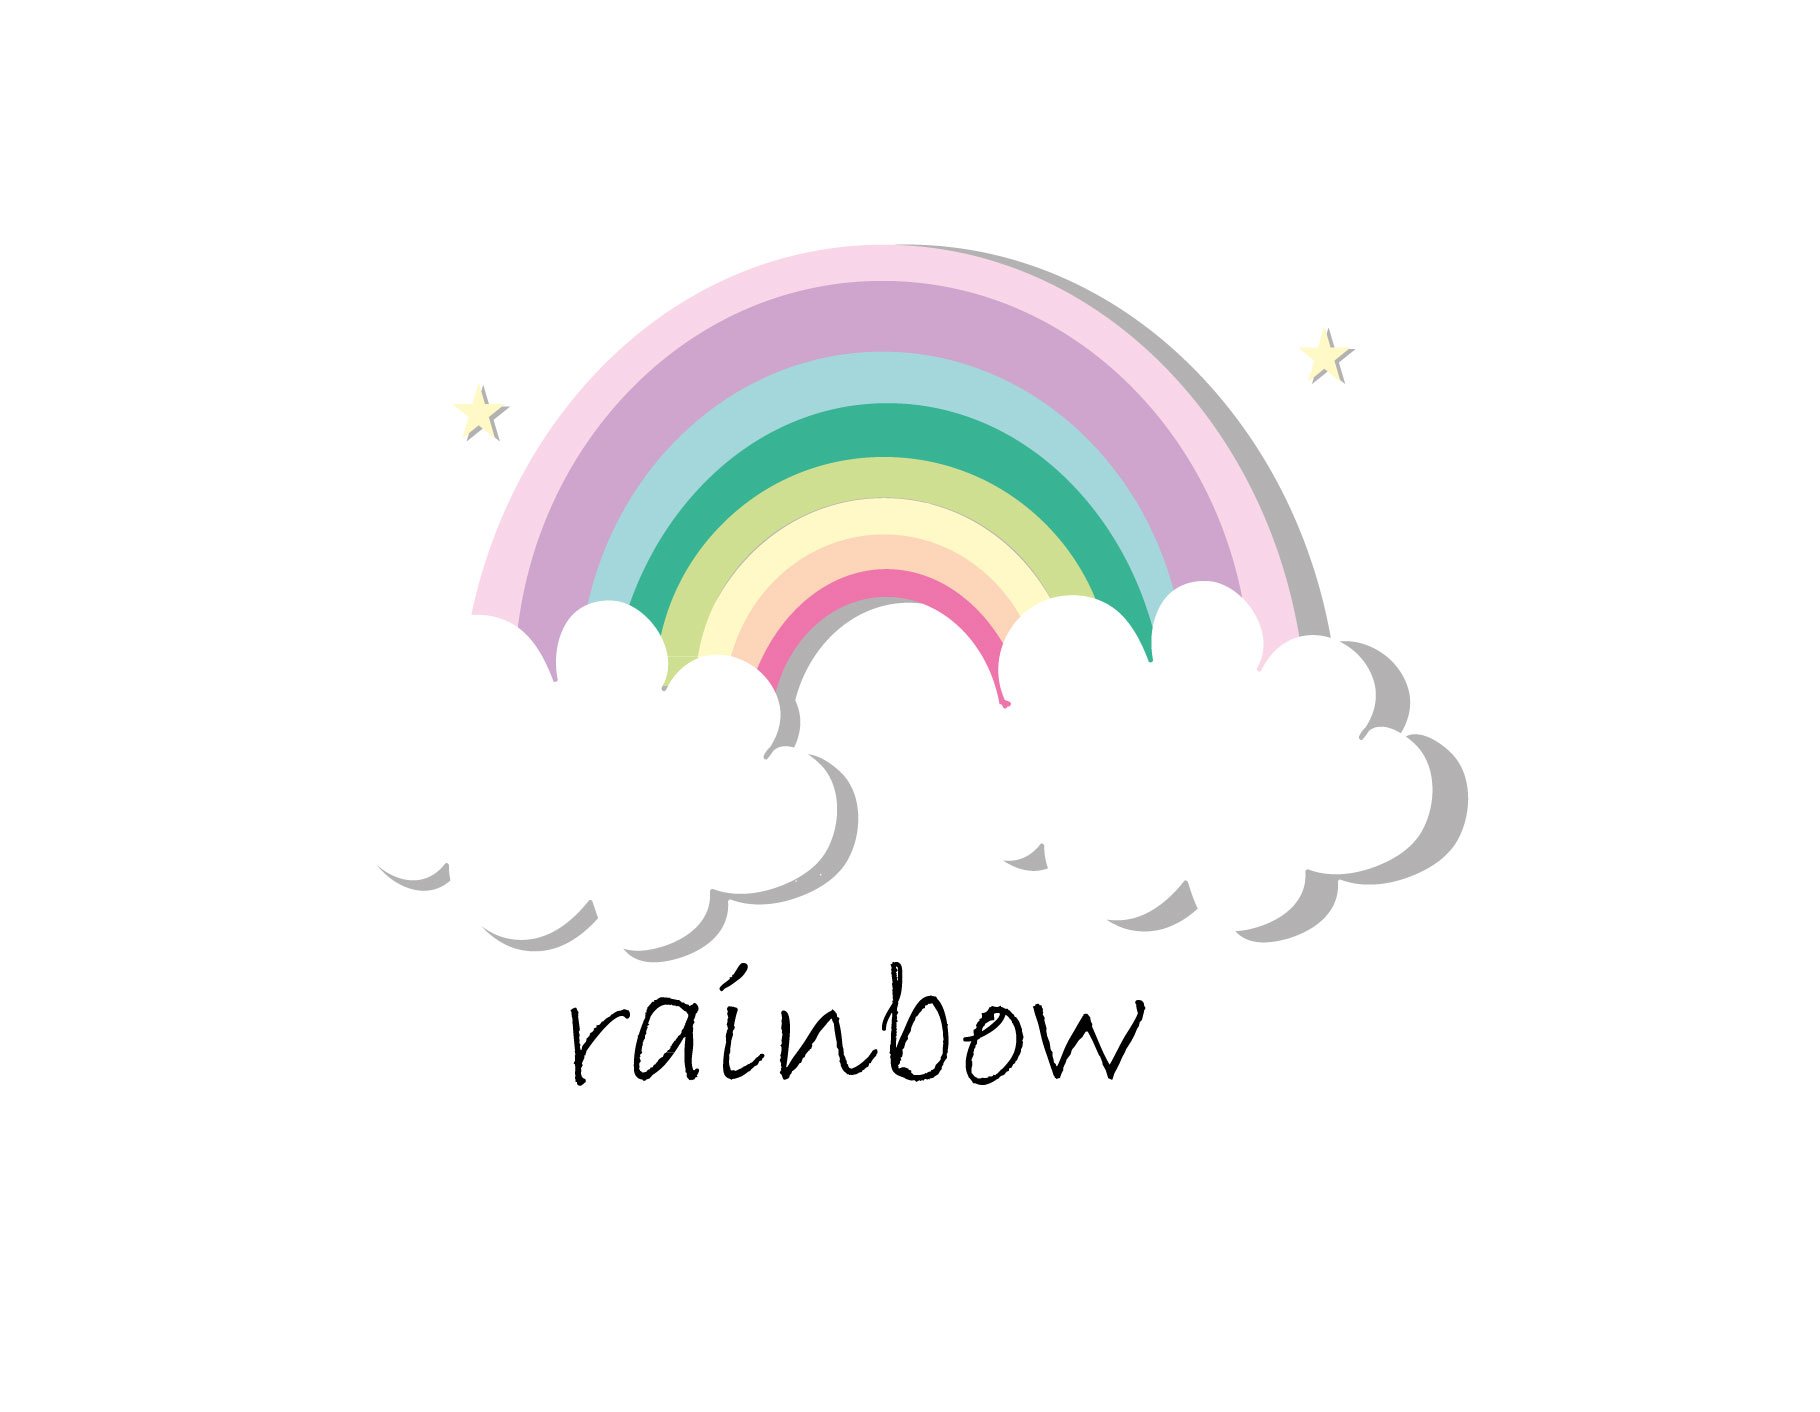 happy rainbow cover image.